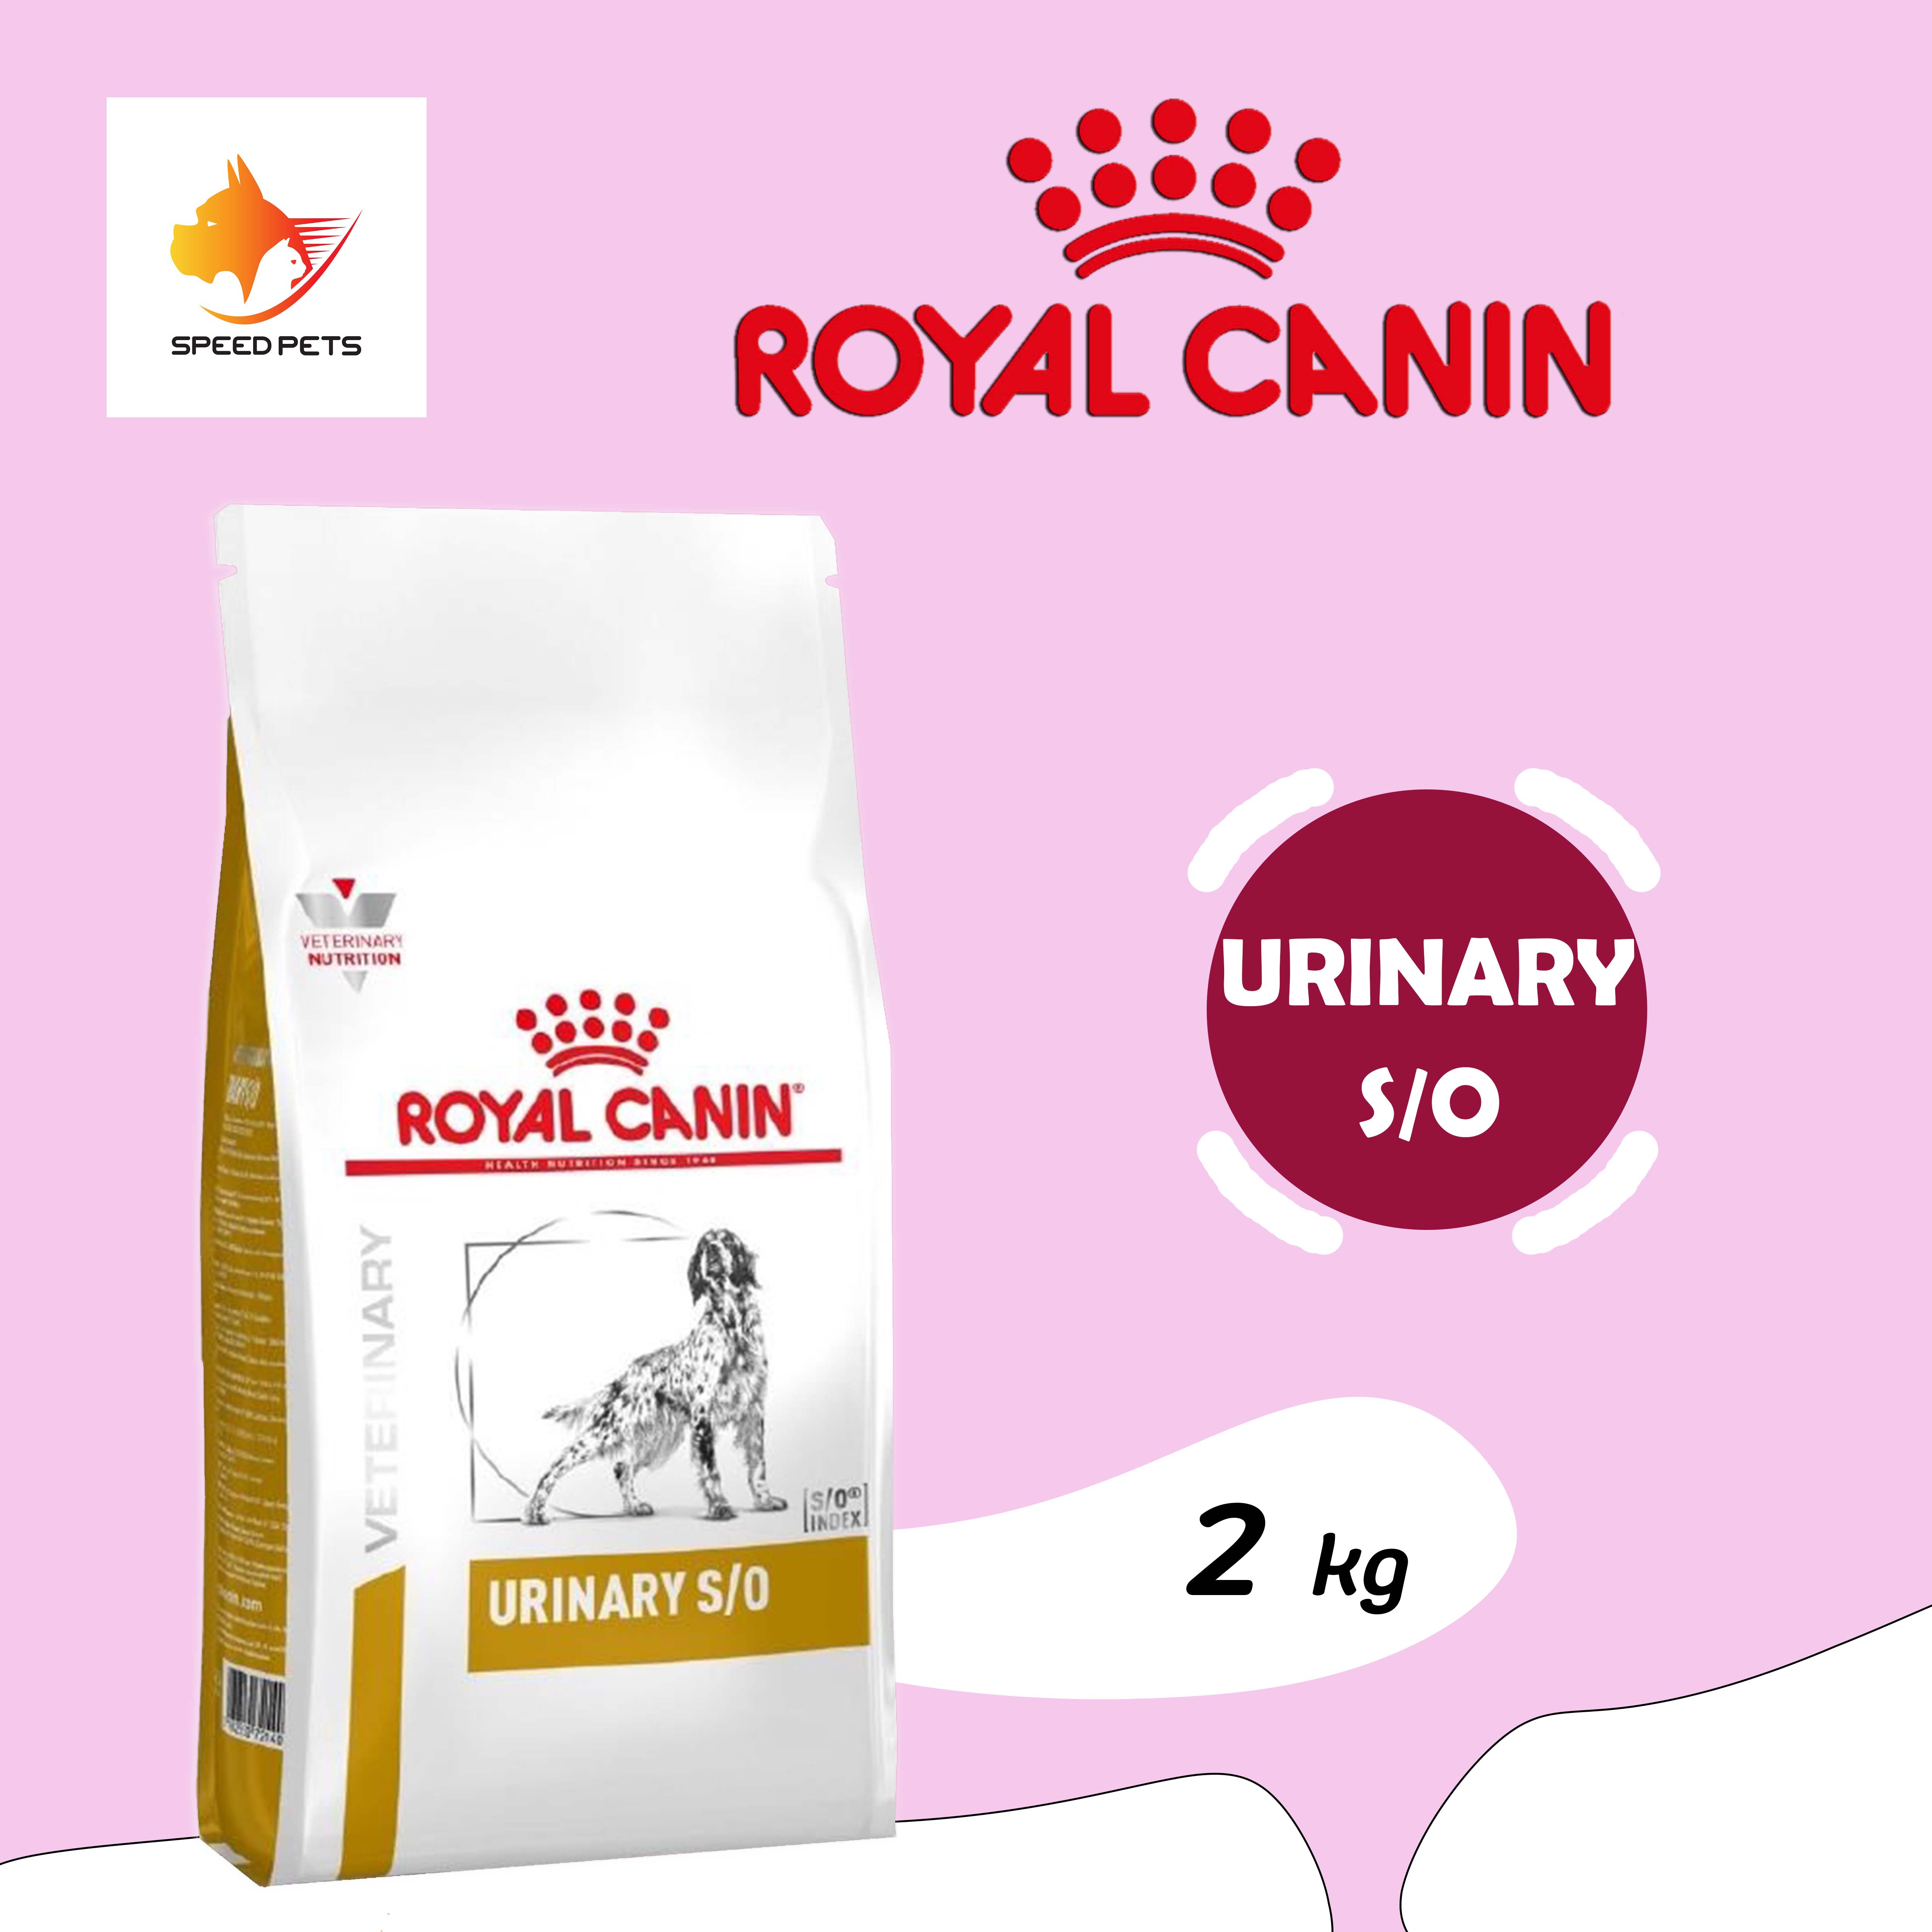 Royal canin urinary s/o dog 2kg อาหารสุนัข แบบเม็ด ประกอบการรักษาโรคนิ่ว ในกระเพาะปัสสาวะ ขนาด 2กก.